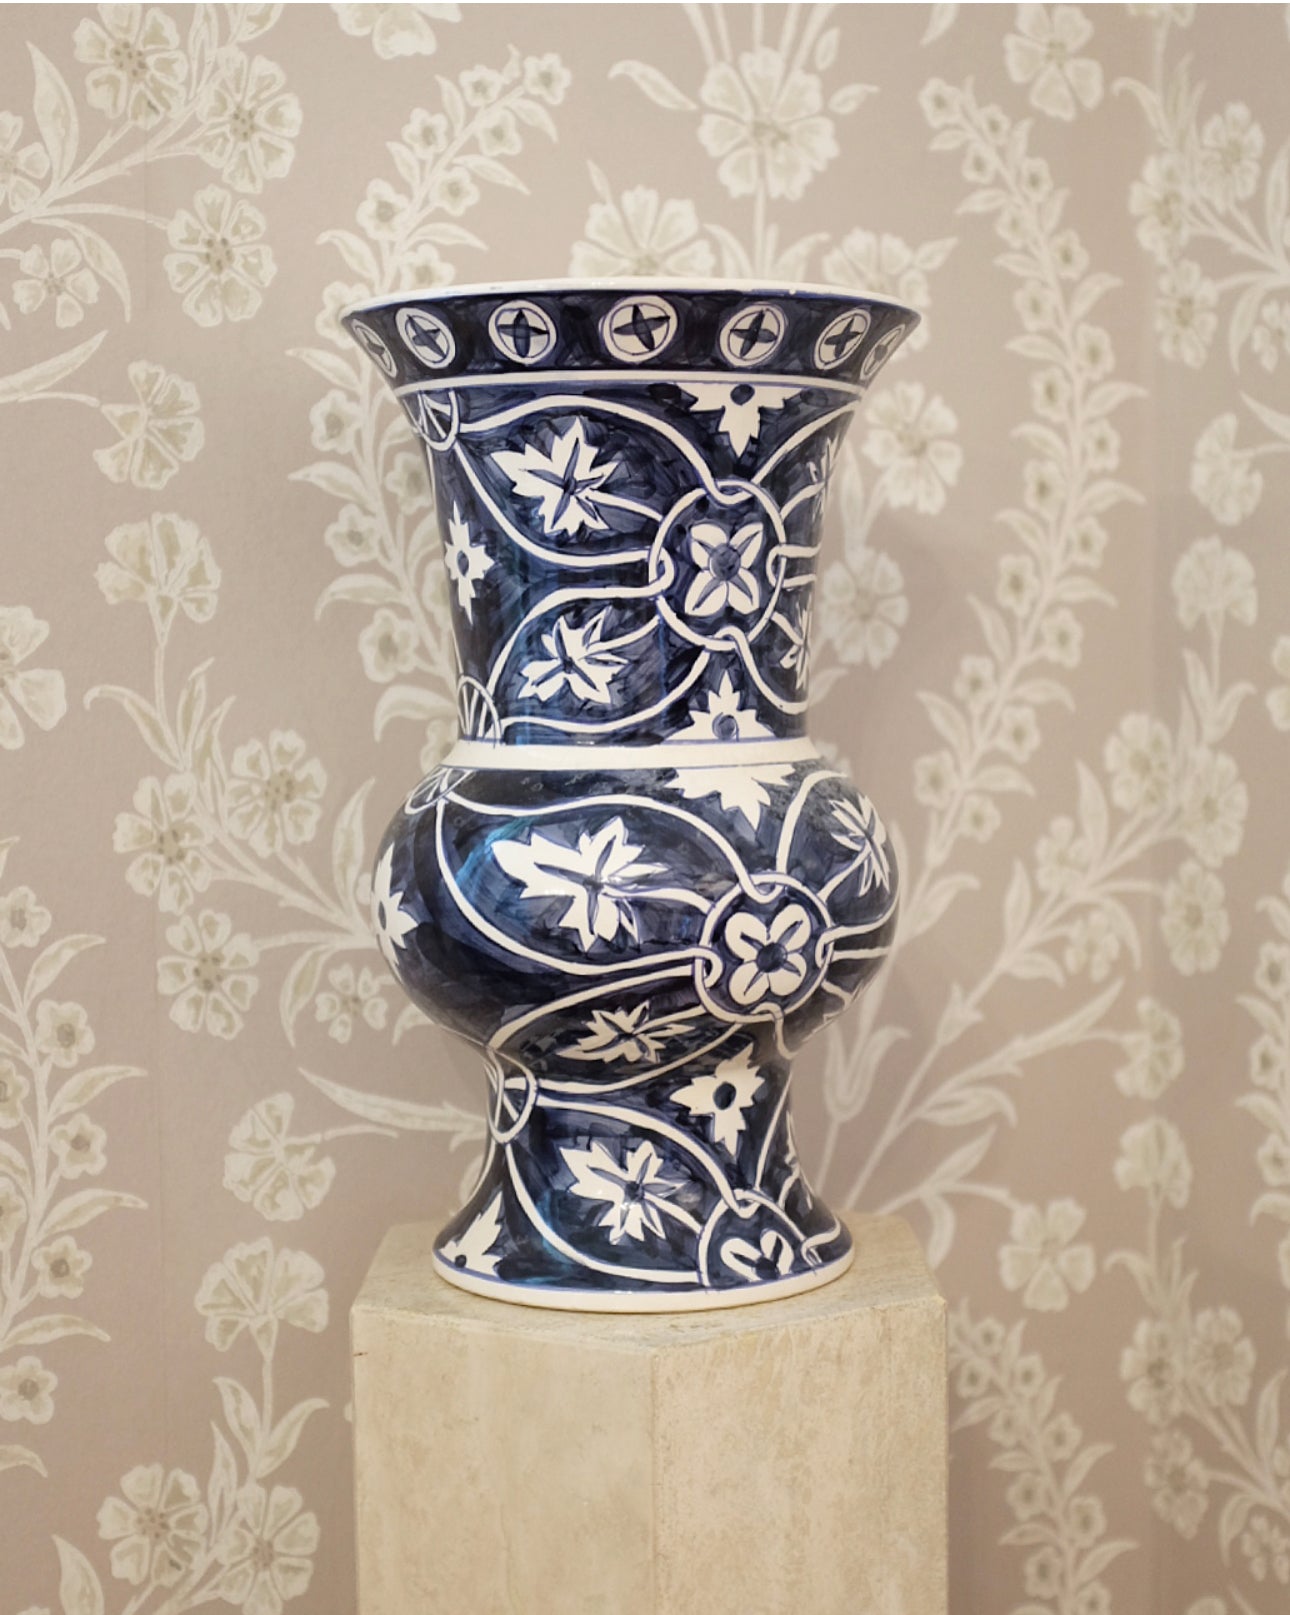 Urn Shaped Blue and White Vase